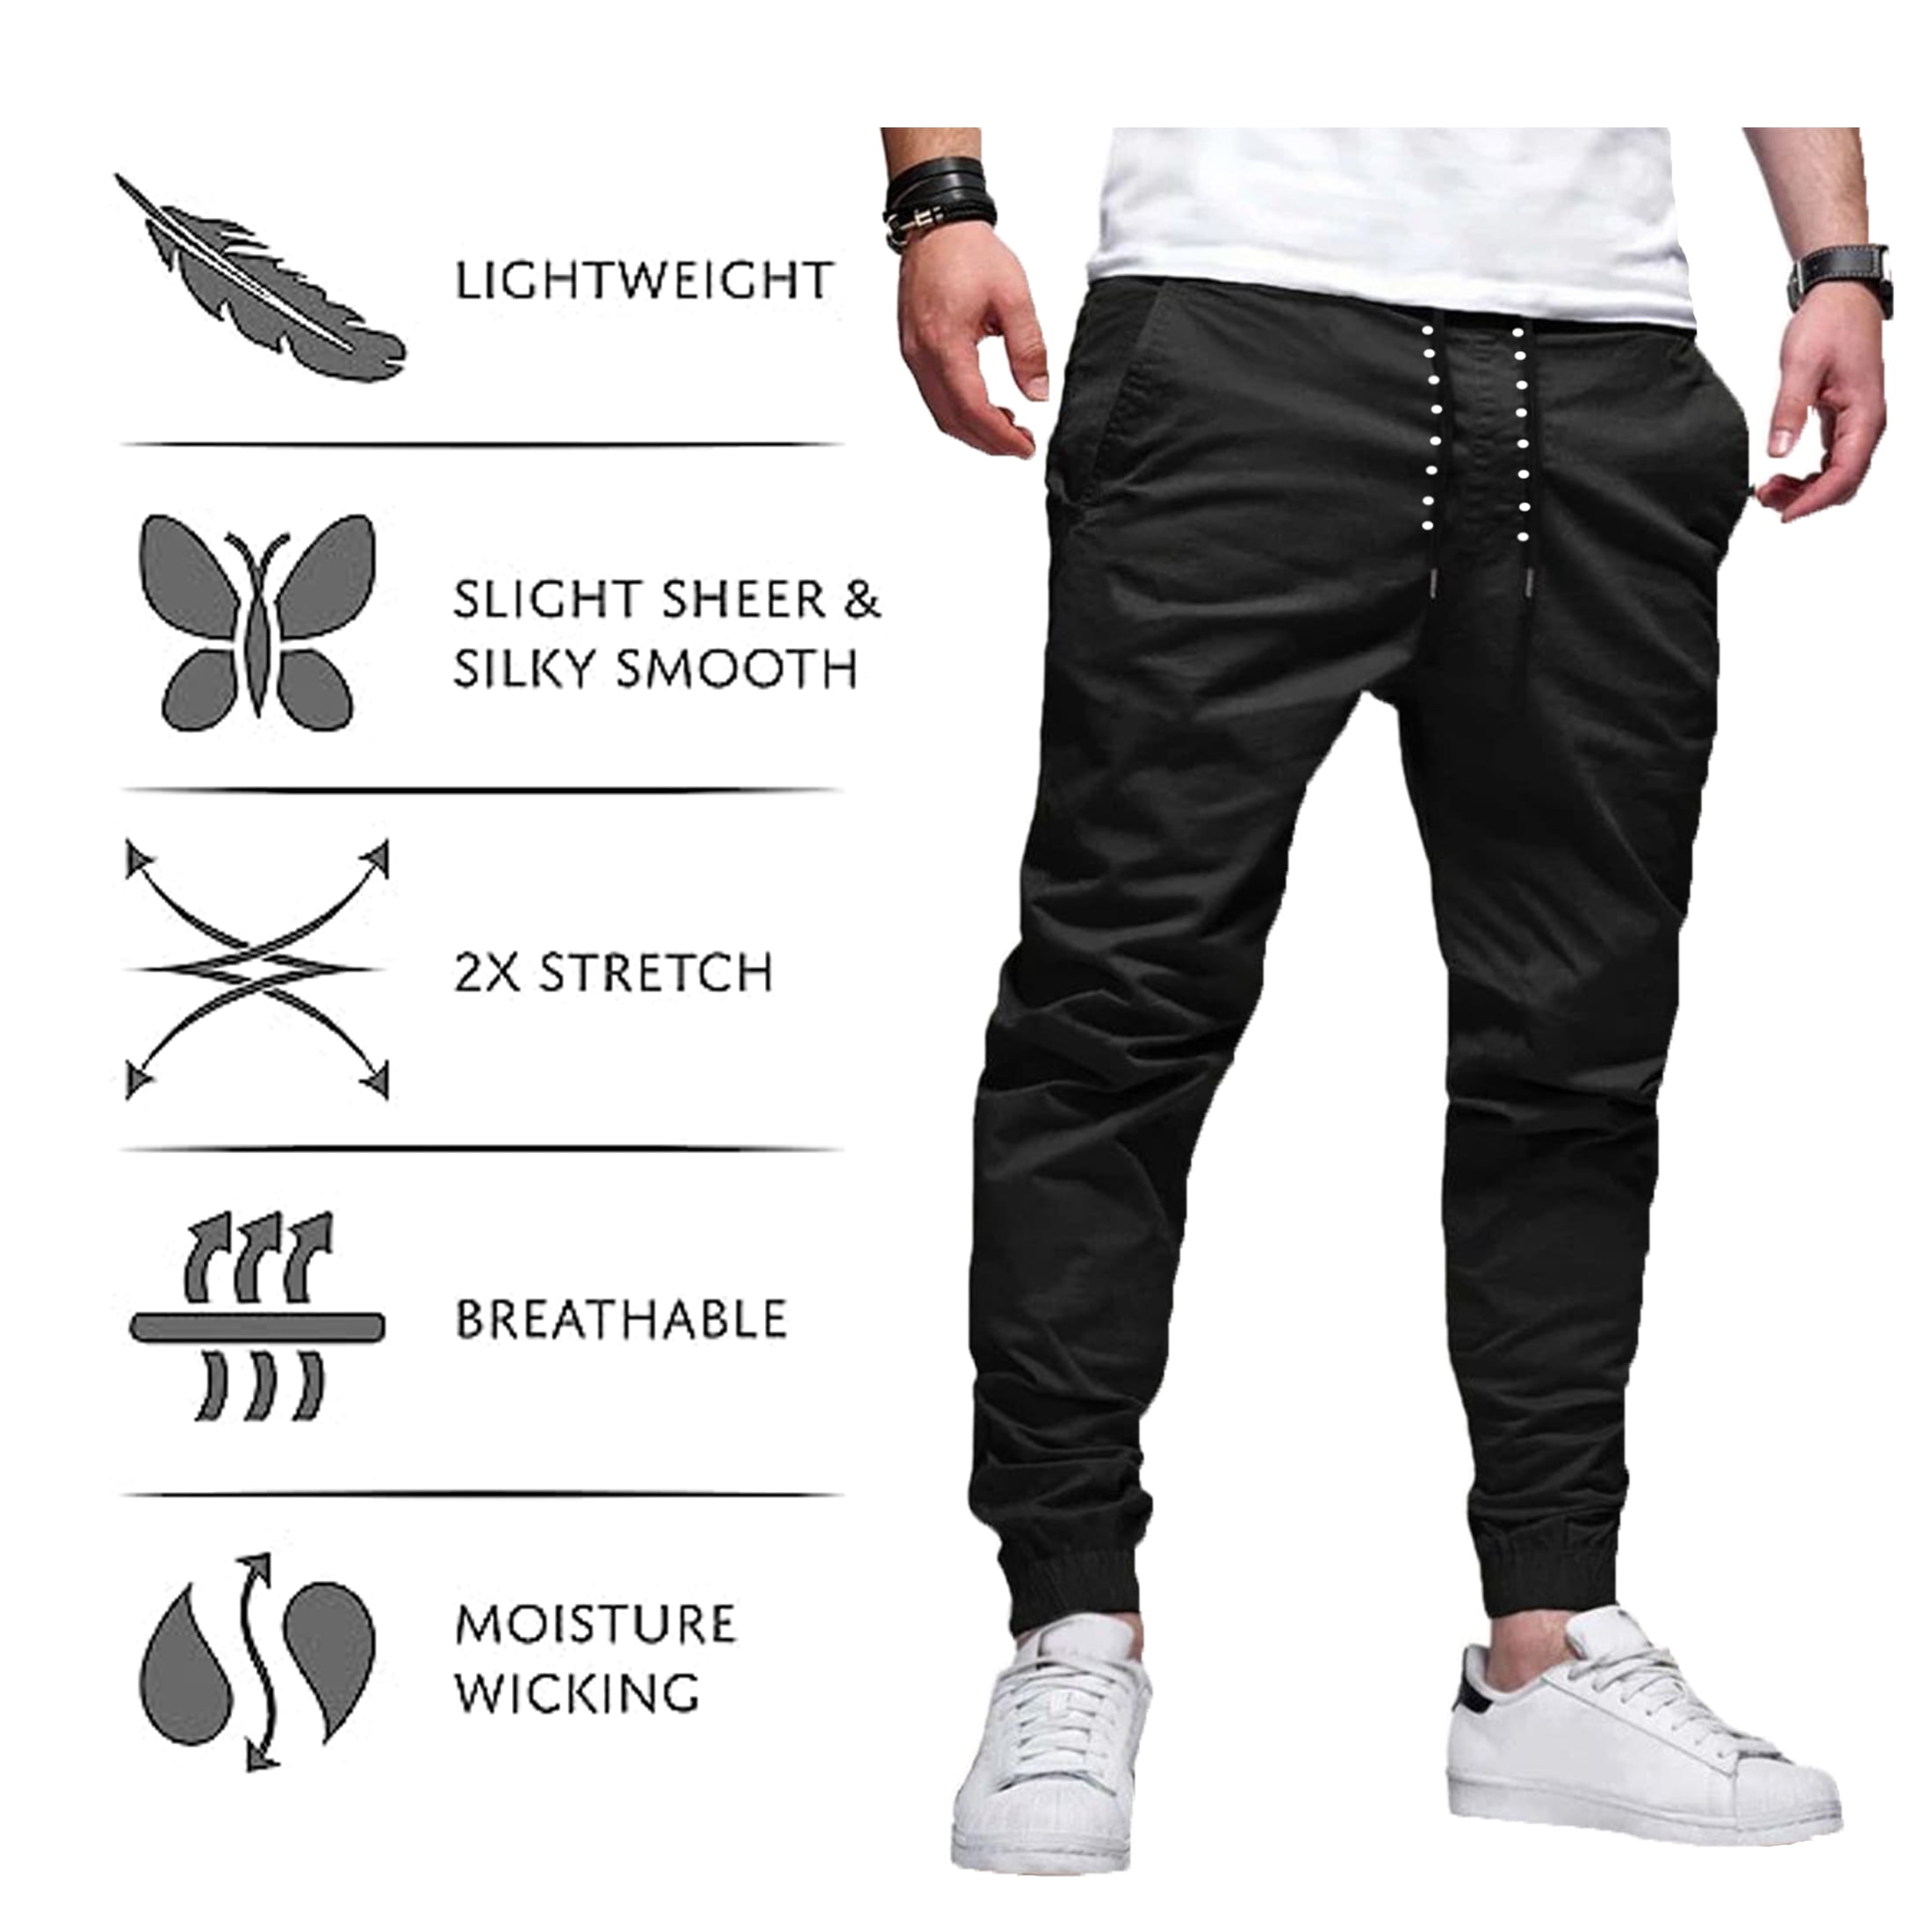 Promo On Men Chino Jogger Pant Khaki Original - Celana Joger Pria